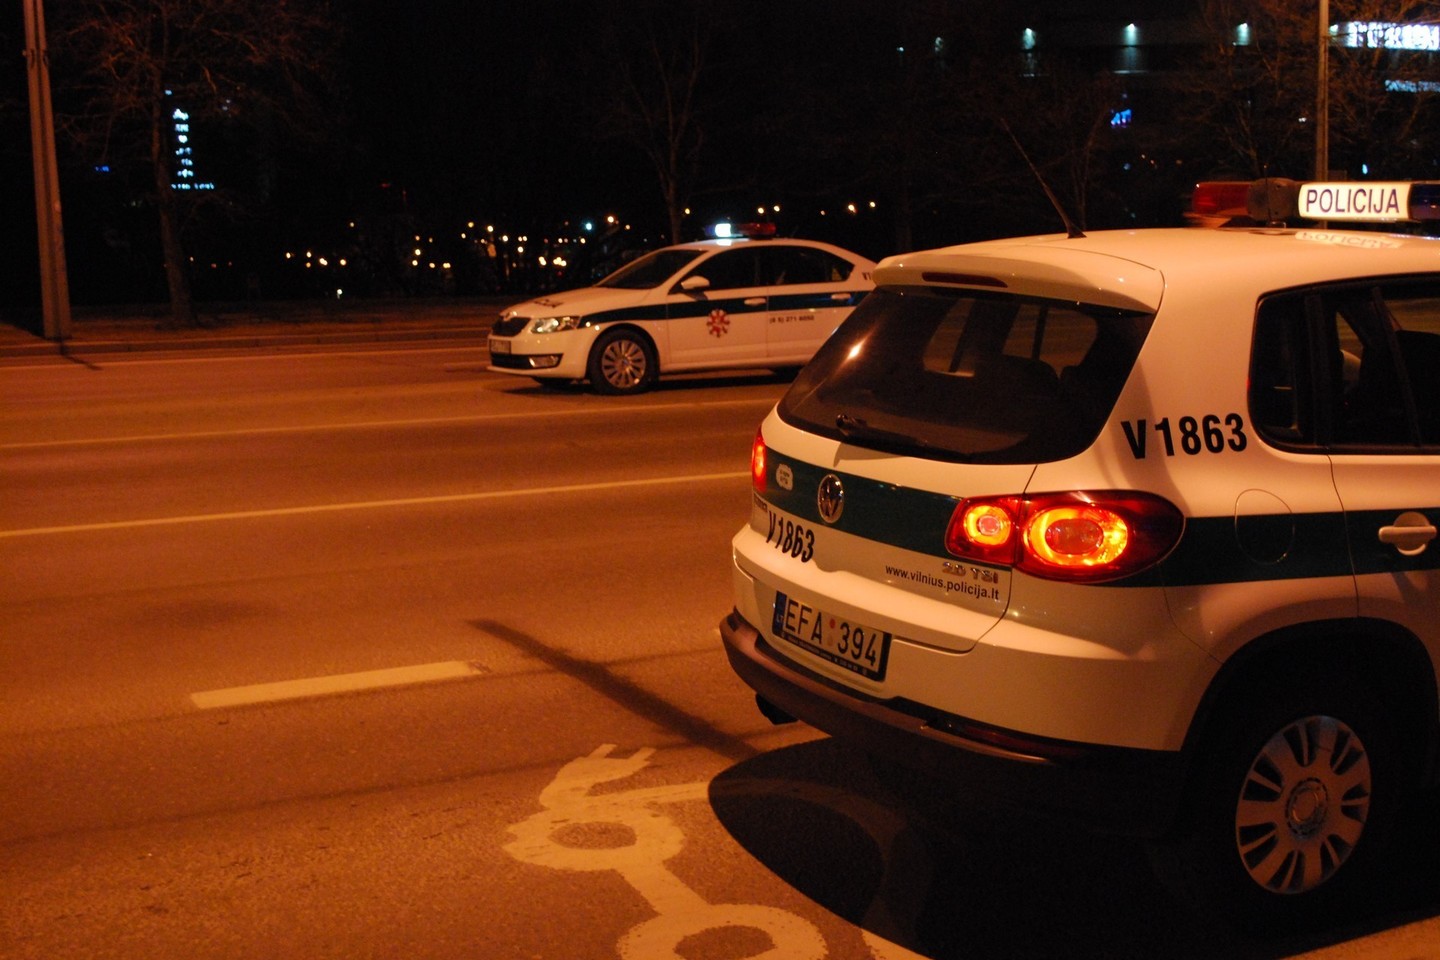 Penktadienio naktį Vilniaus gatvėse zujo beteisiai vairuotojai.<br>Lrytas.lt nuotr.